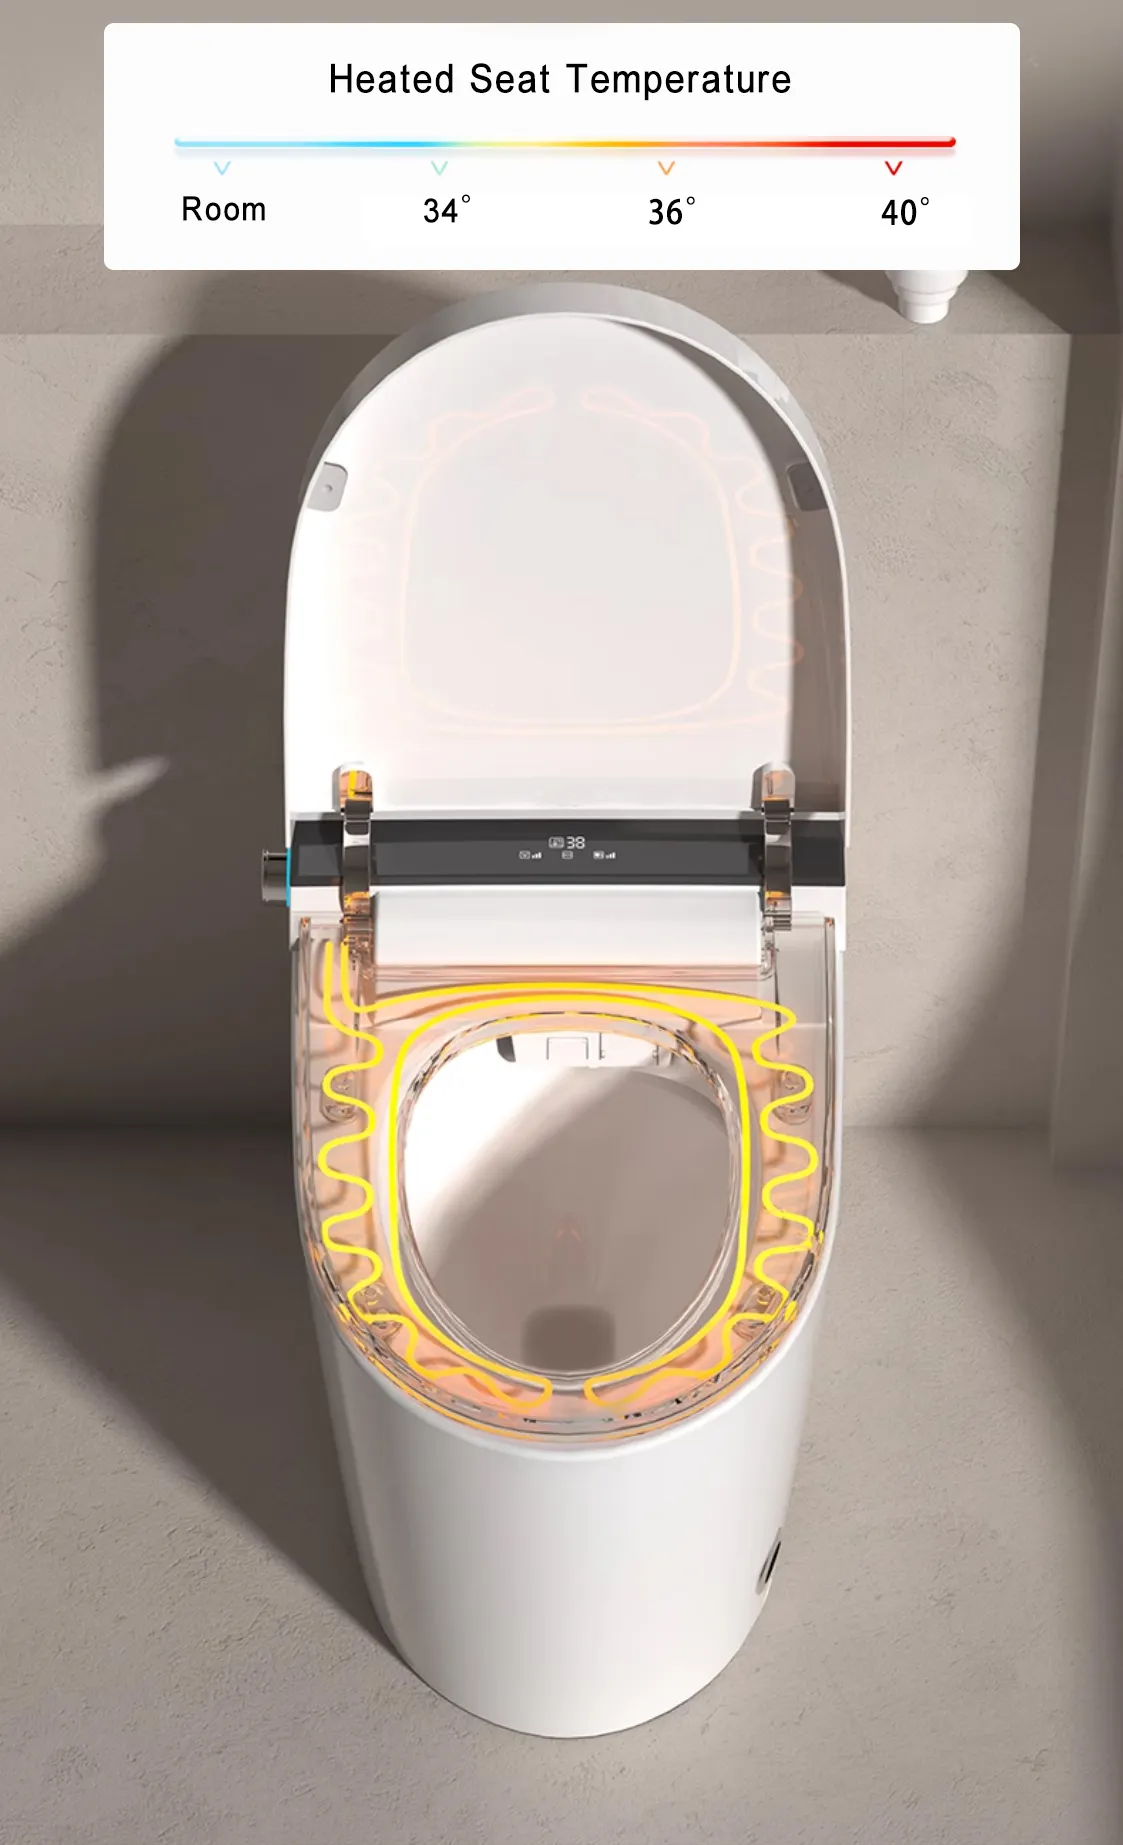 مرحاض ذكي كهربائي غسيل آلي رائج المبيع مرحاض ذكي لغسيل السوائل من السيراميك مع مرحاض بوعاء